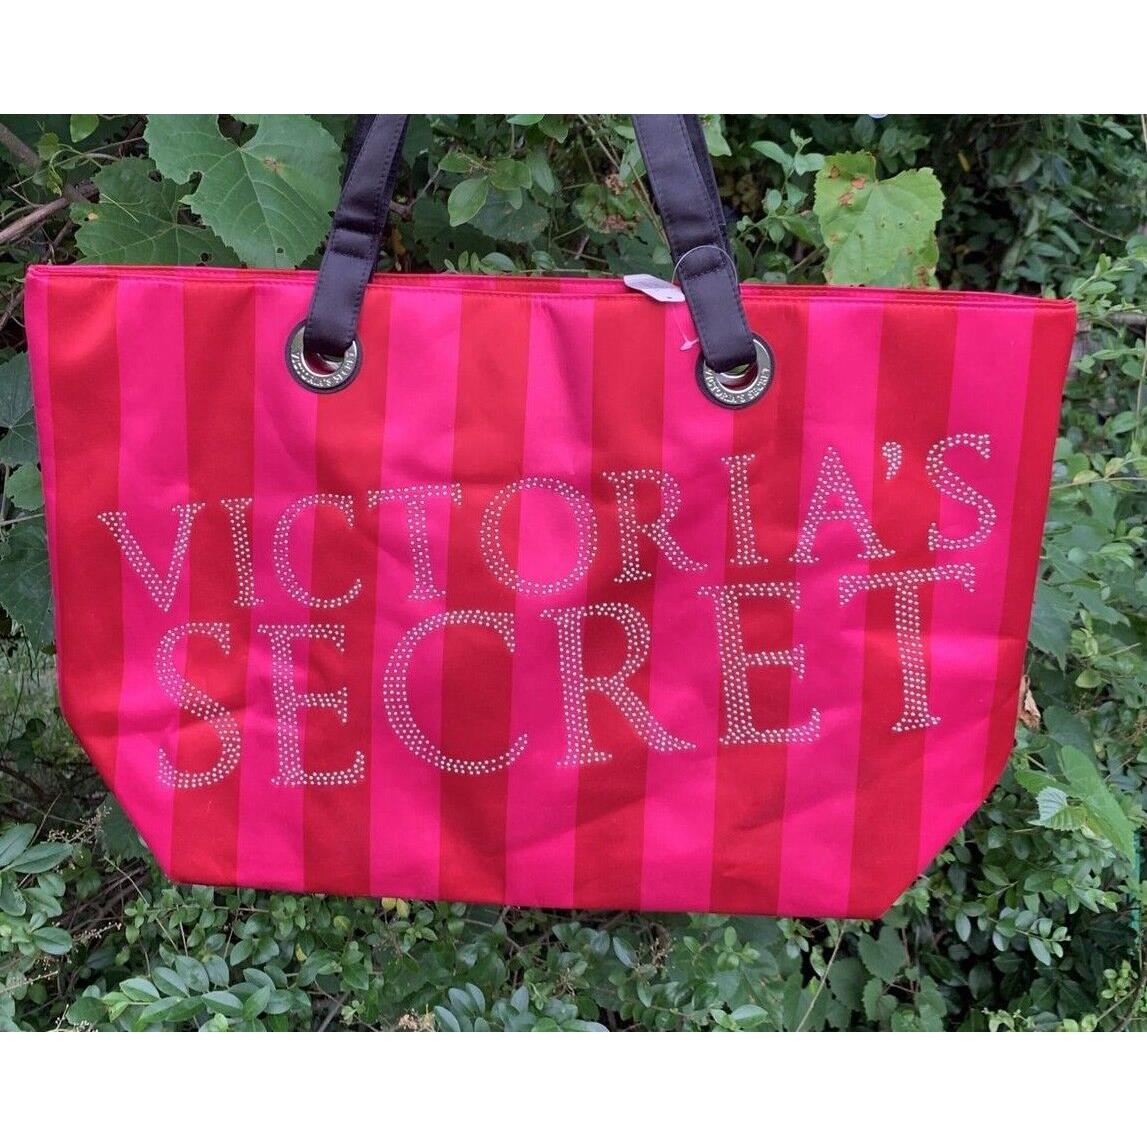 Victoria's Secret Satin Tote Bags